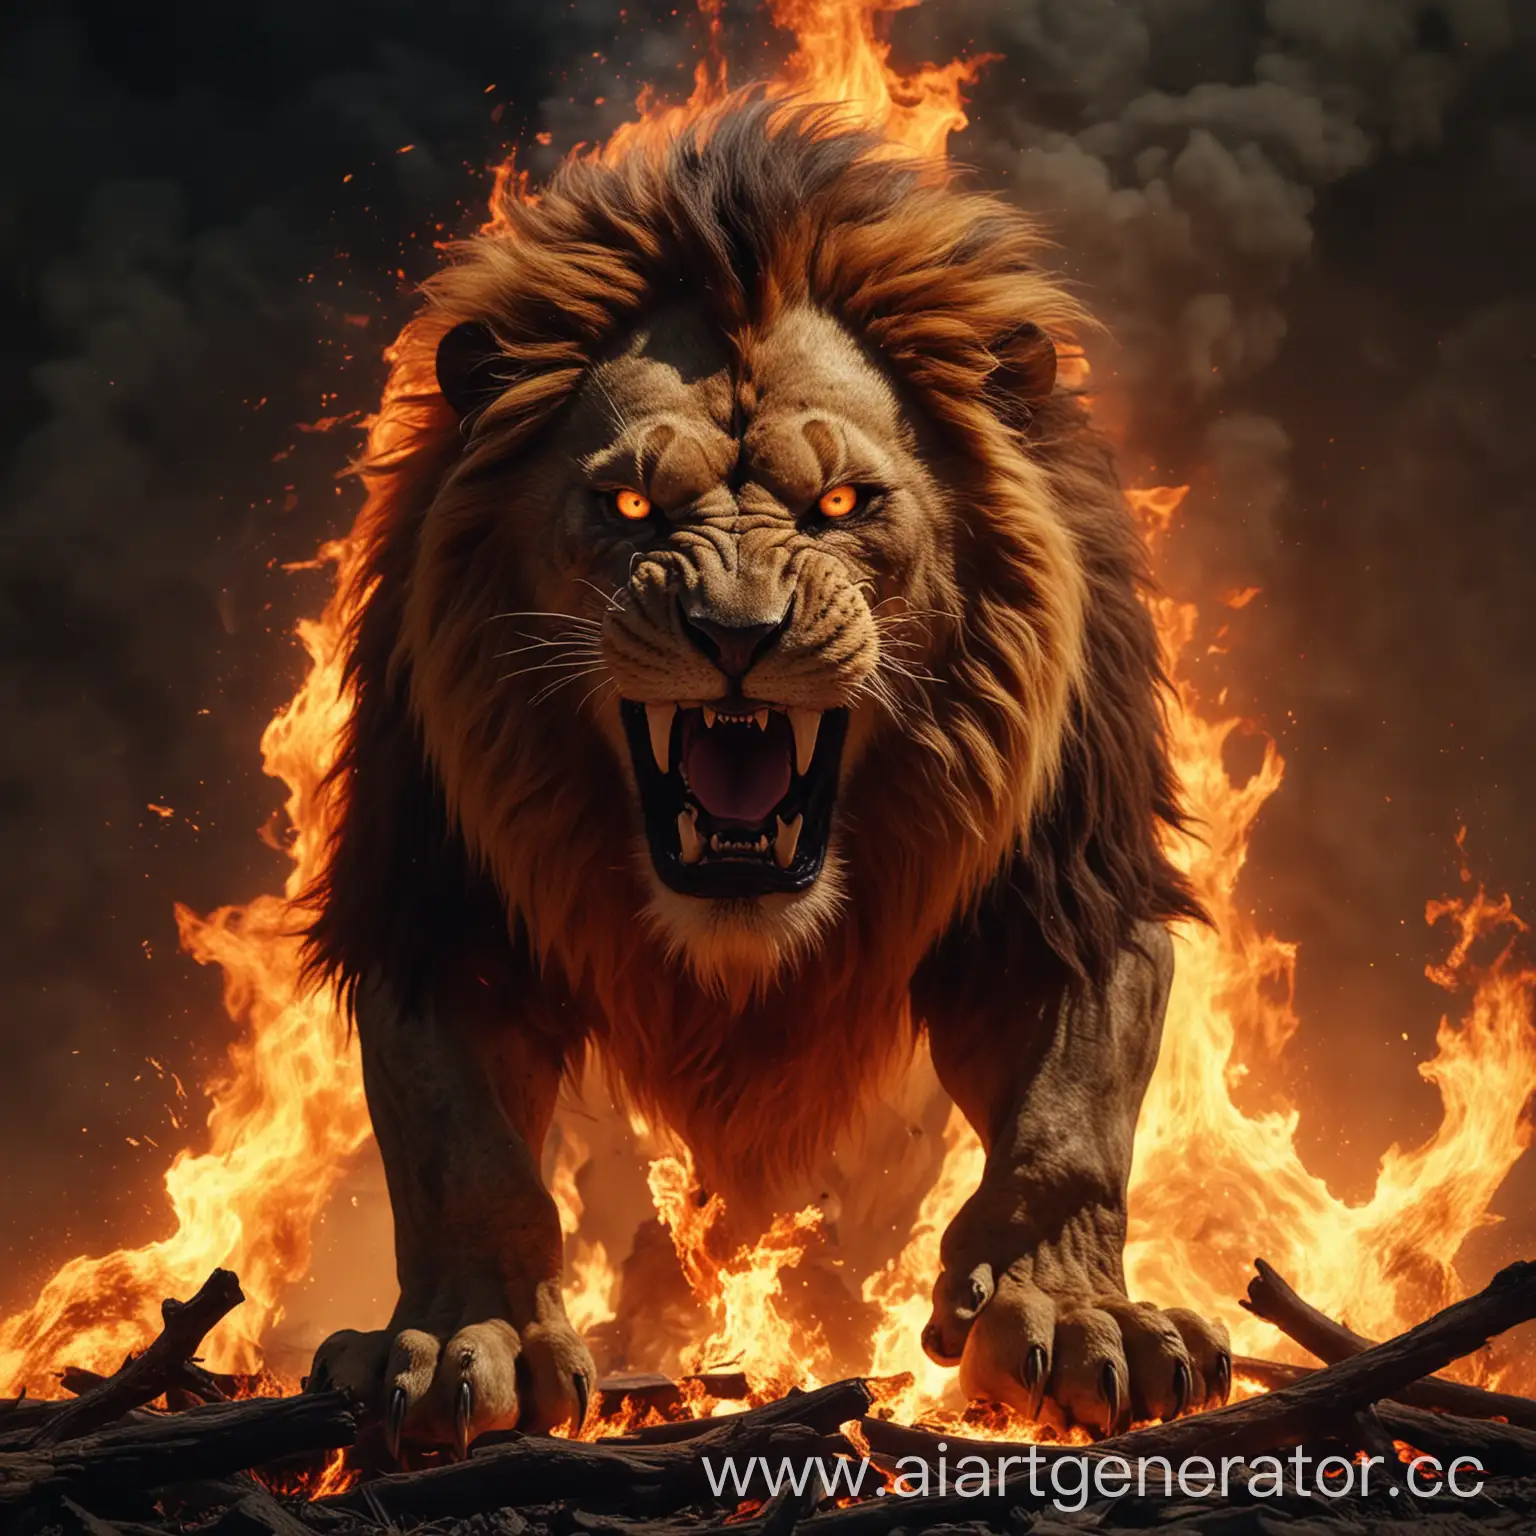 Fiery-Monster-Lion-Roaring-in-8K-Resolution